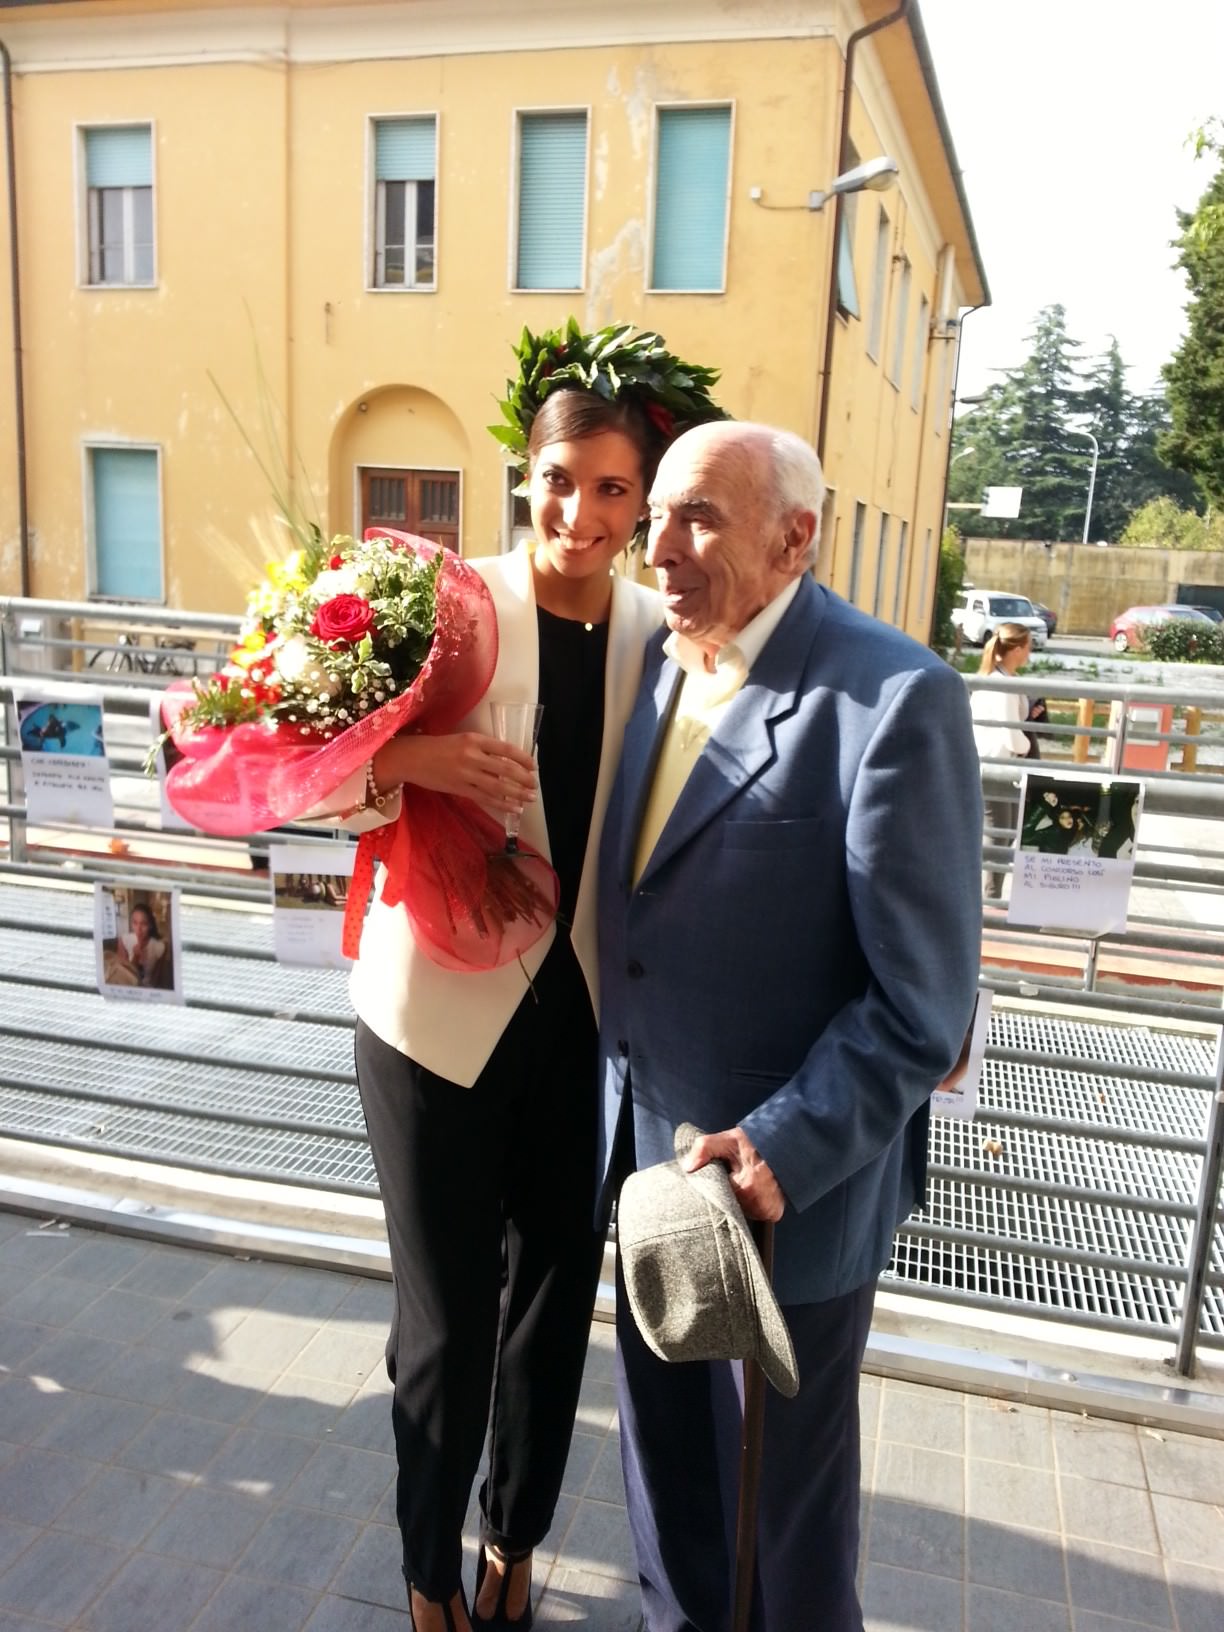 Congratulazioni alla neolaureata Martina Lunardini